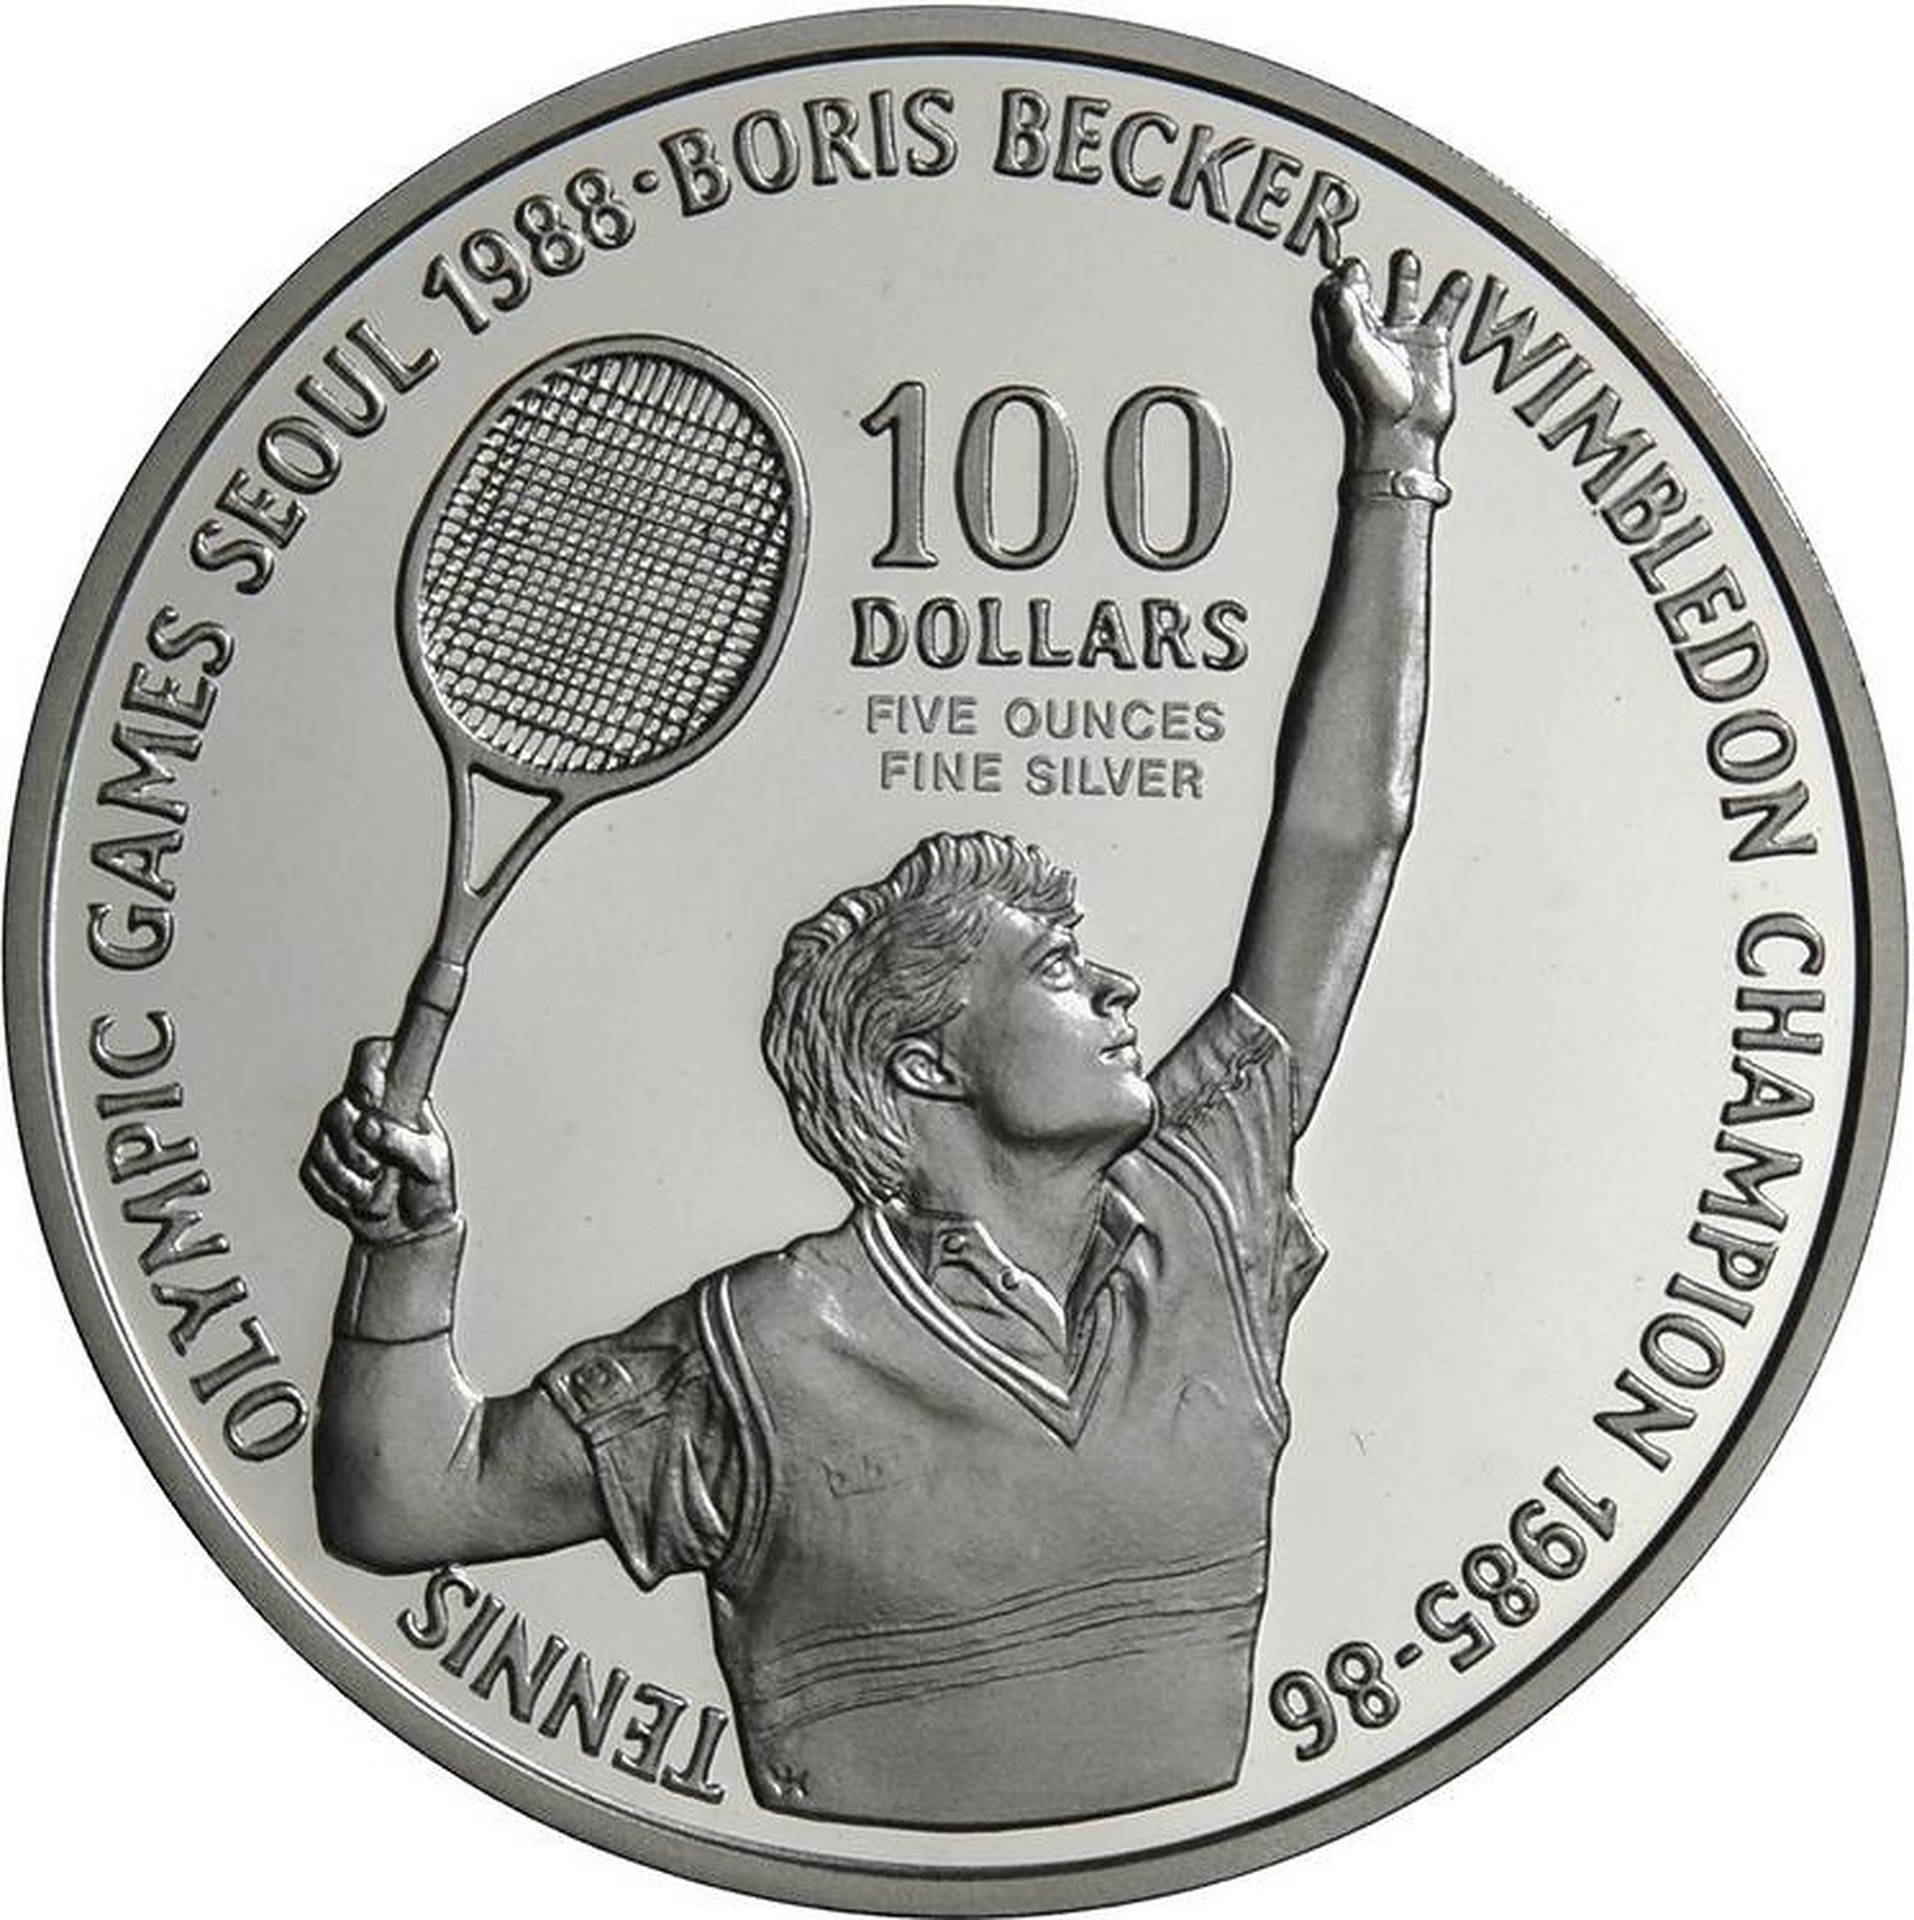 Boris Becker Silver Coin Wallpaper